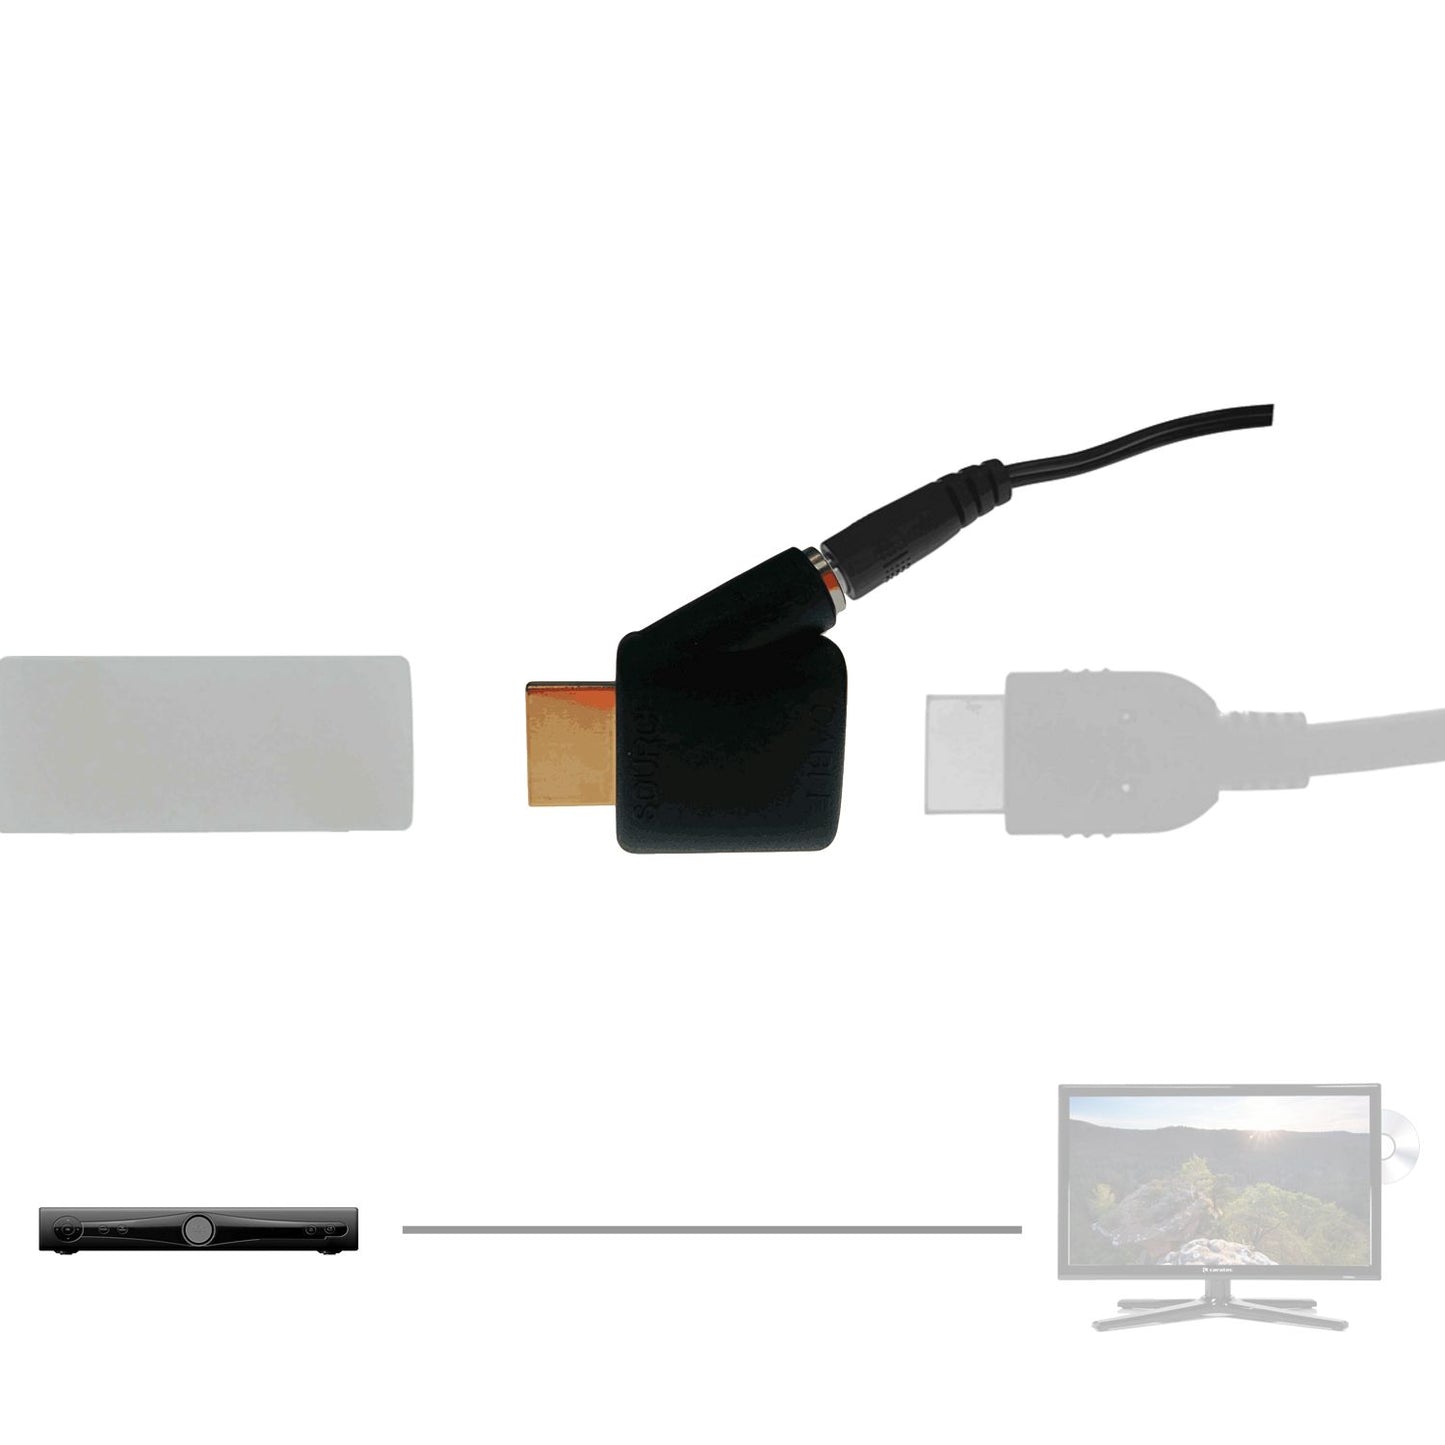 Externe Spannungsversorgung für HDMI Repeater und Aktivkabel, Phantomspeisung,5V